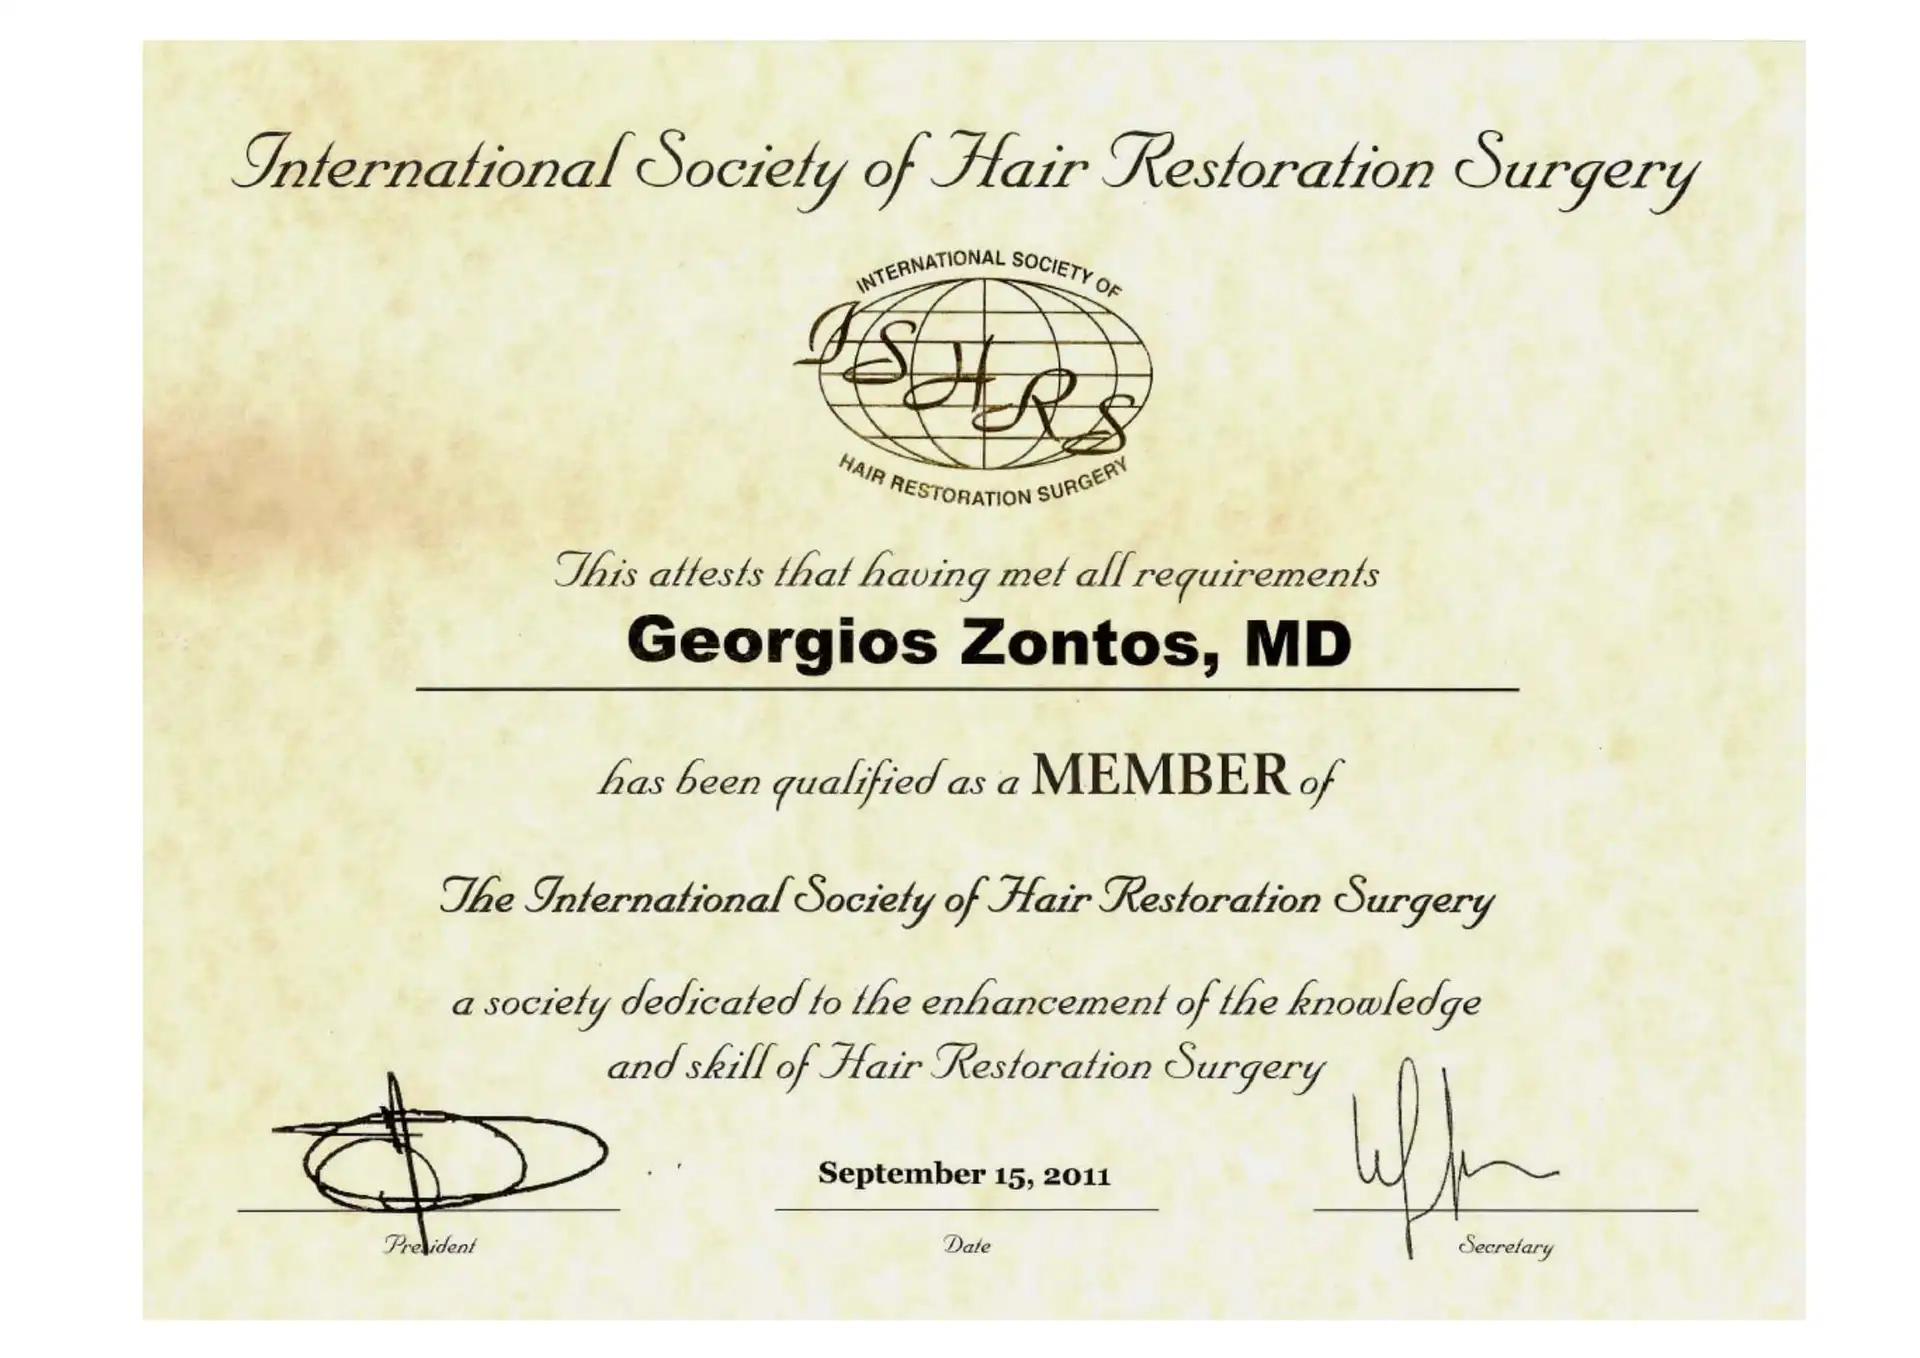 Dr Zontos-medlemskabsstatus af ISHRS